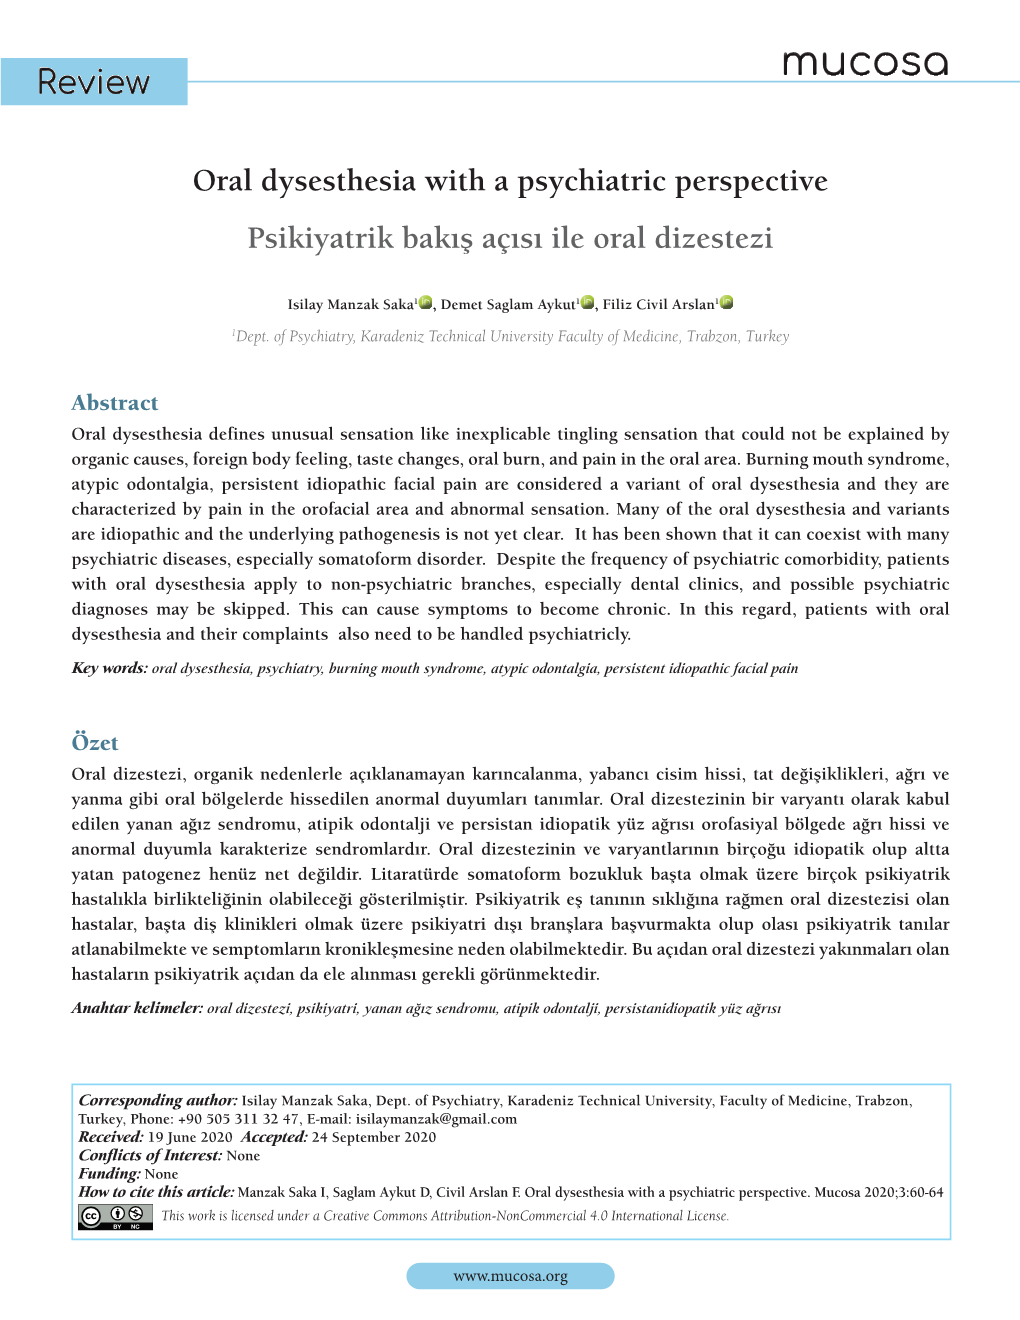 Oral Dysesthesia with a Psychiatric Perspective Psikiyatrik Bakış Açısı Ile Oral Dizestezi